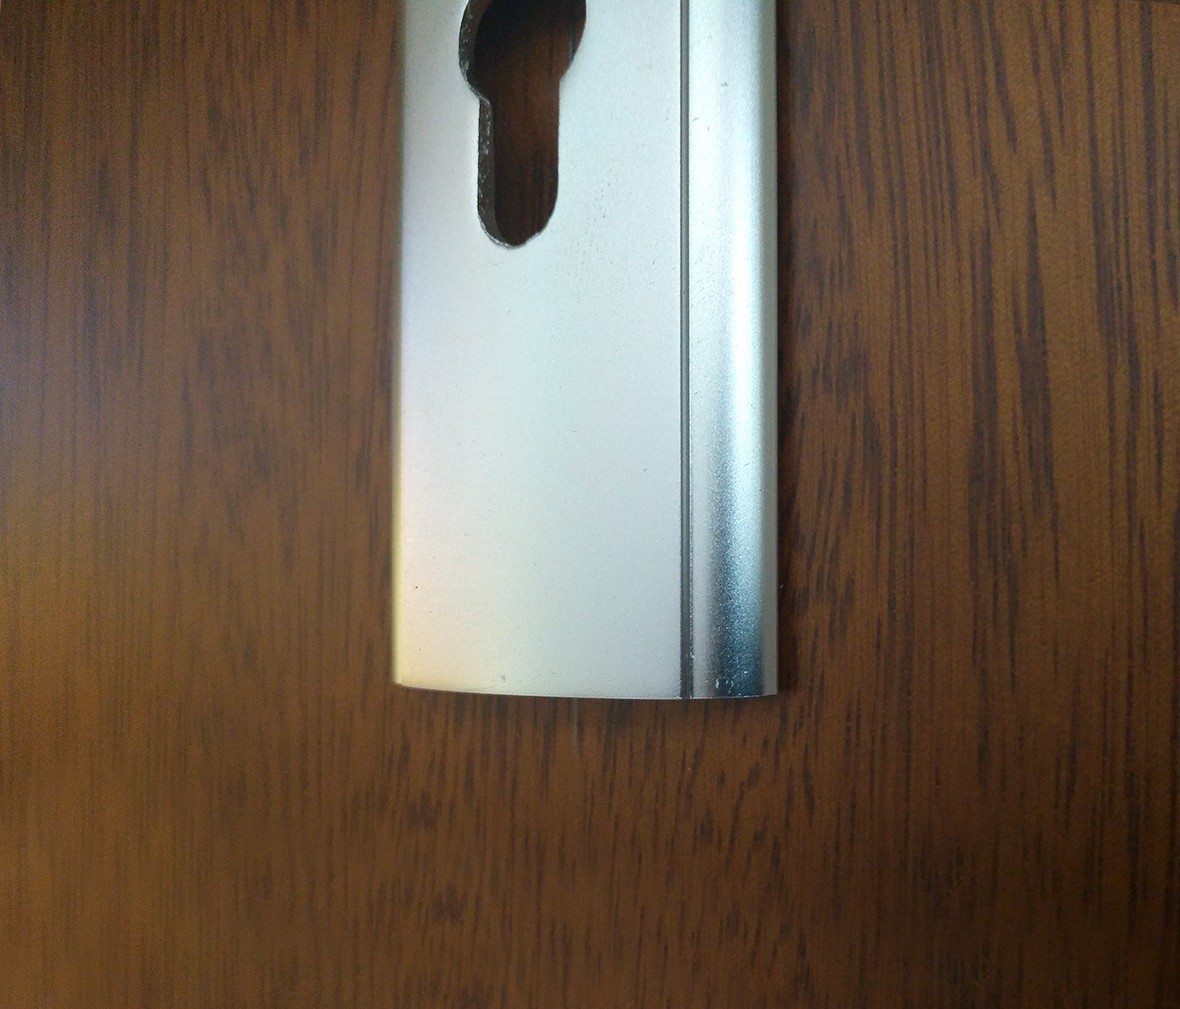 晾霸五金 米开朗5802-A32型号门锁 铝合金材质 优质门锁 情景 细节